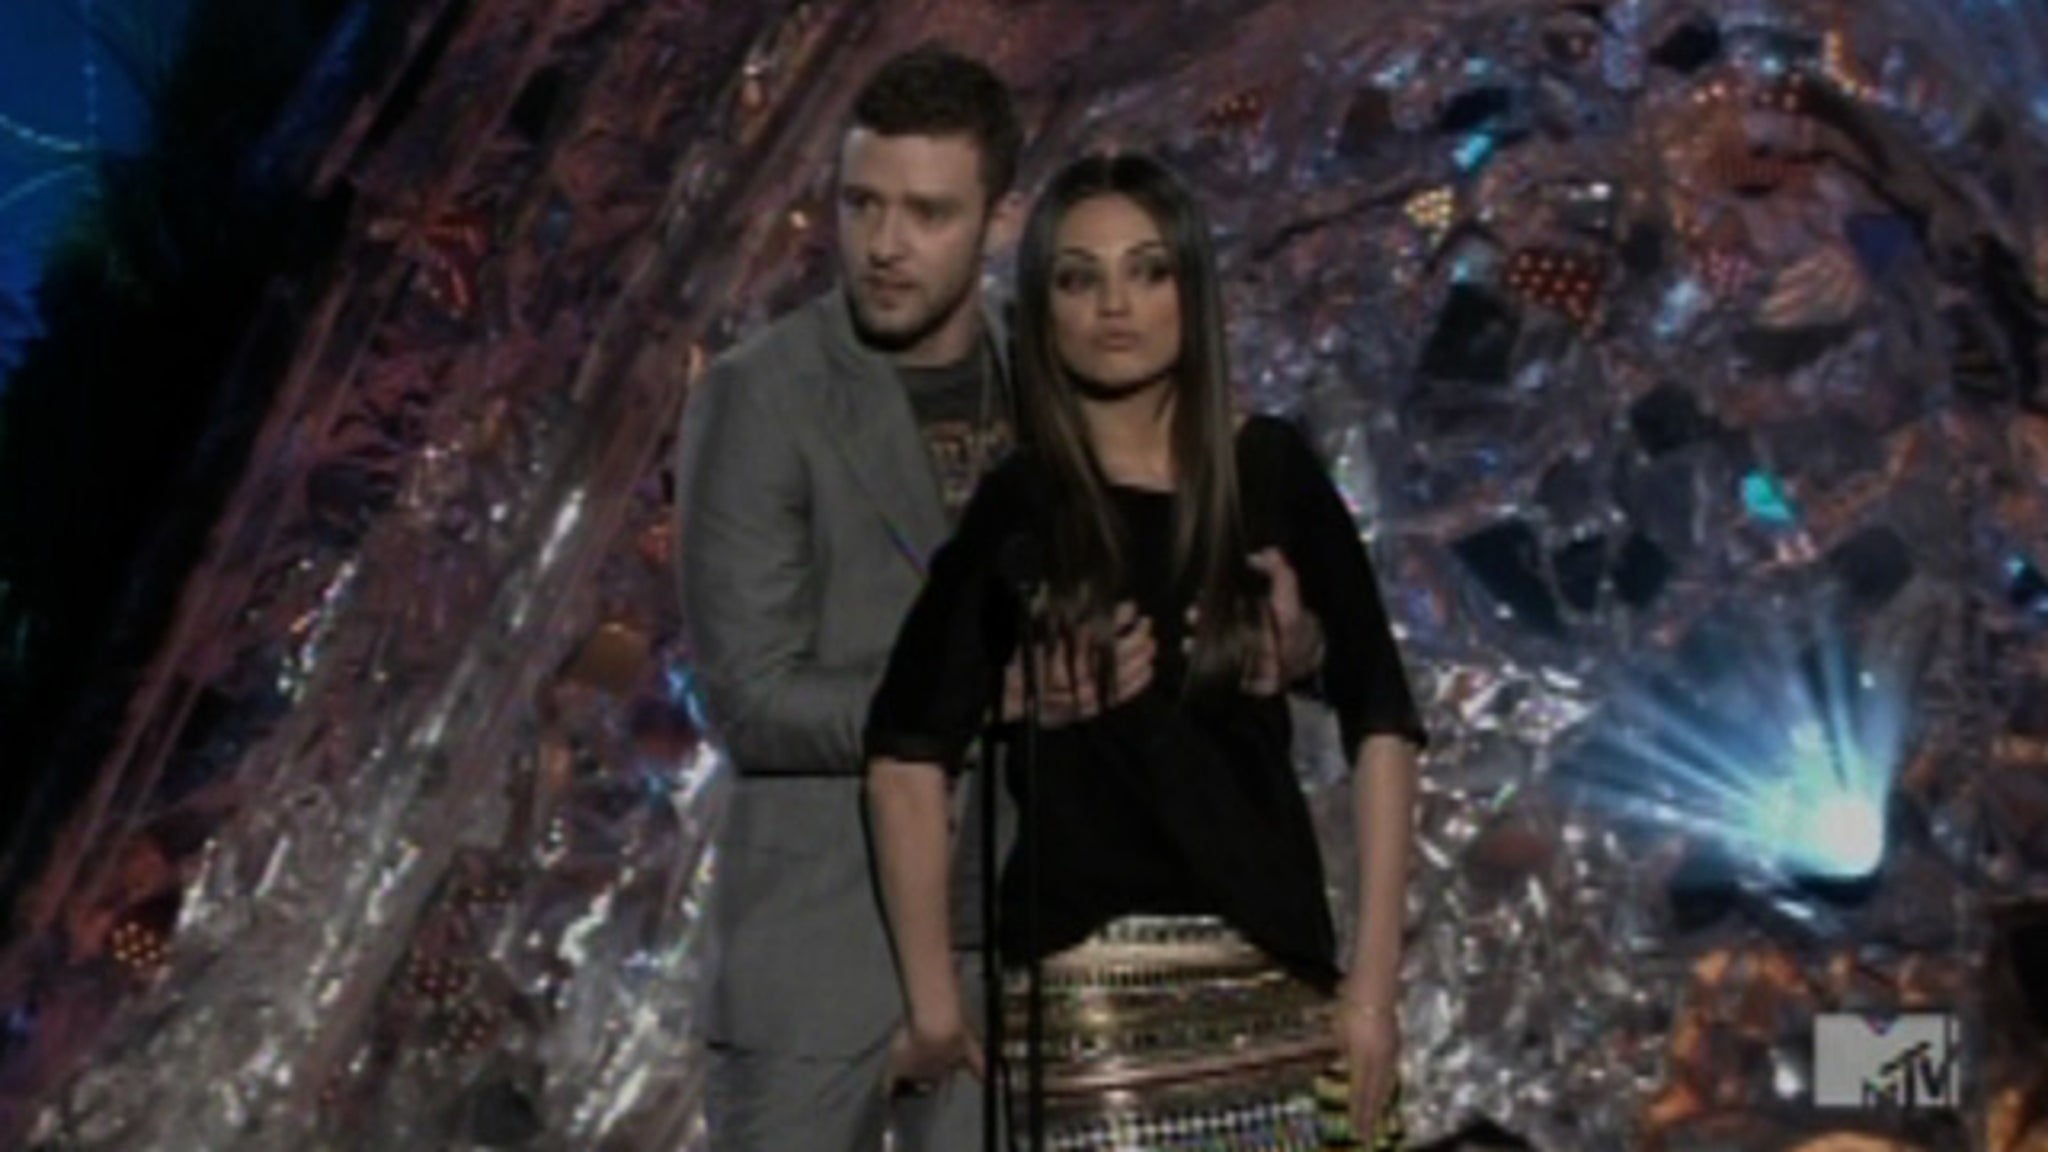 [VIDEO] Justin Timberlake Groping Mila Kunis -- Genital Grope on MTV